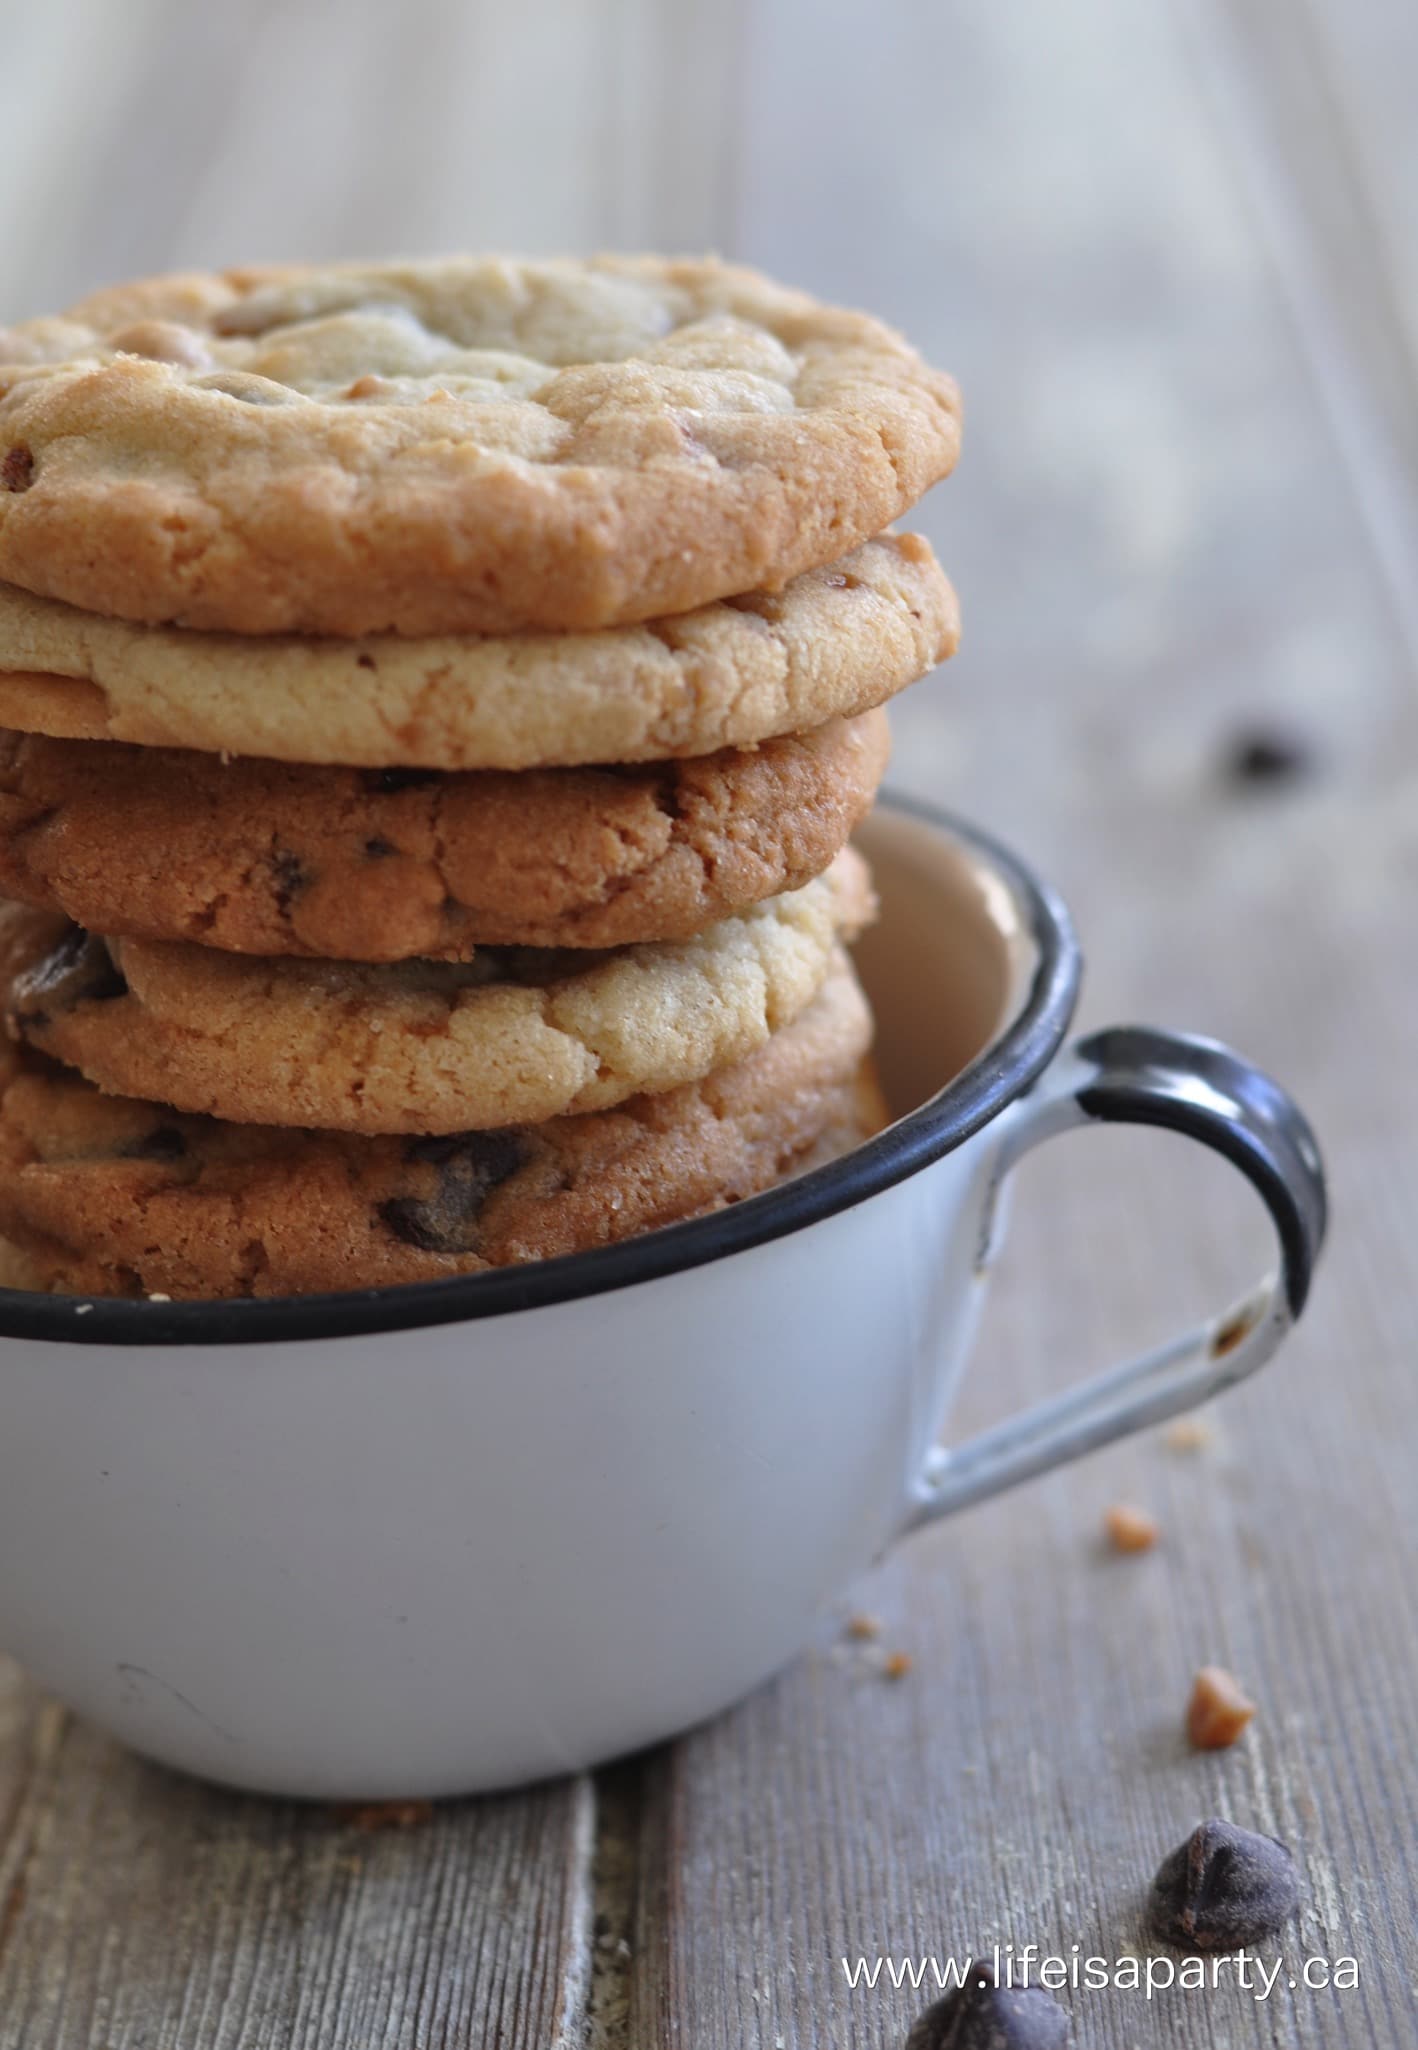 Cookies in a teacup